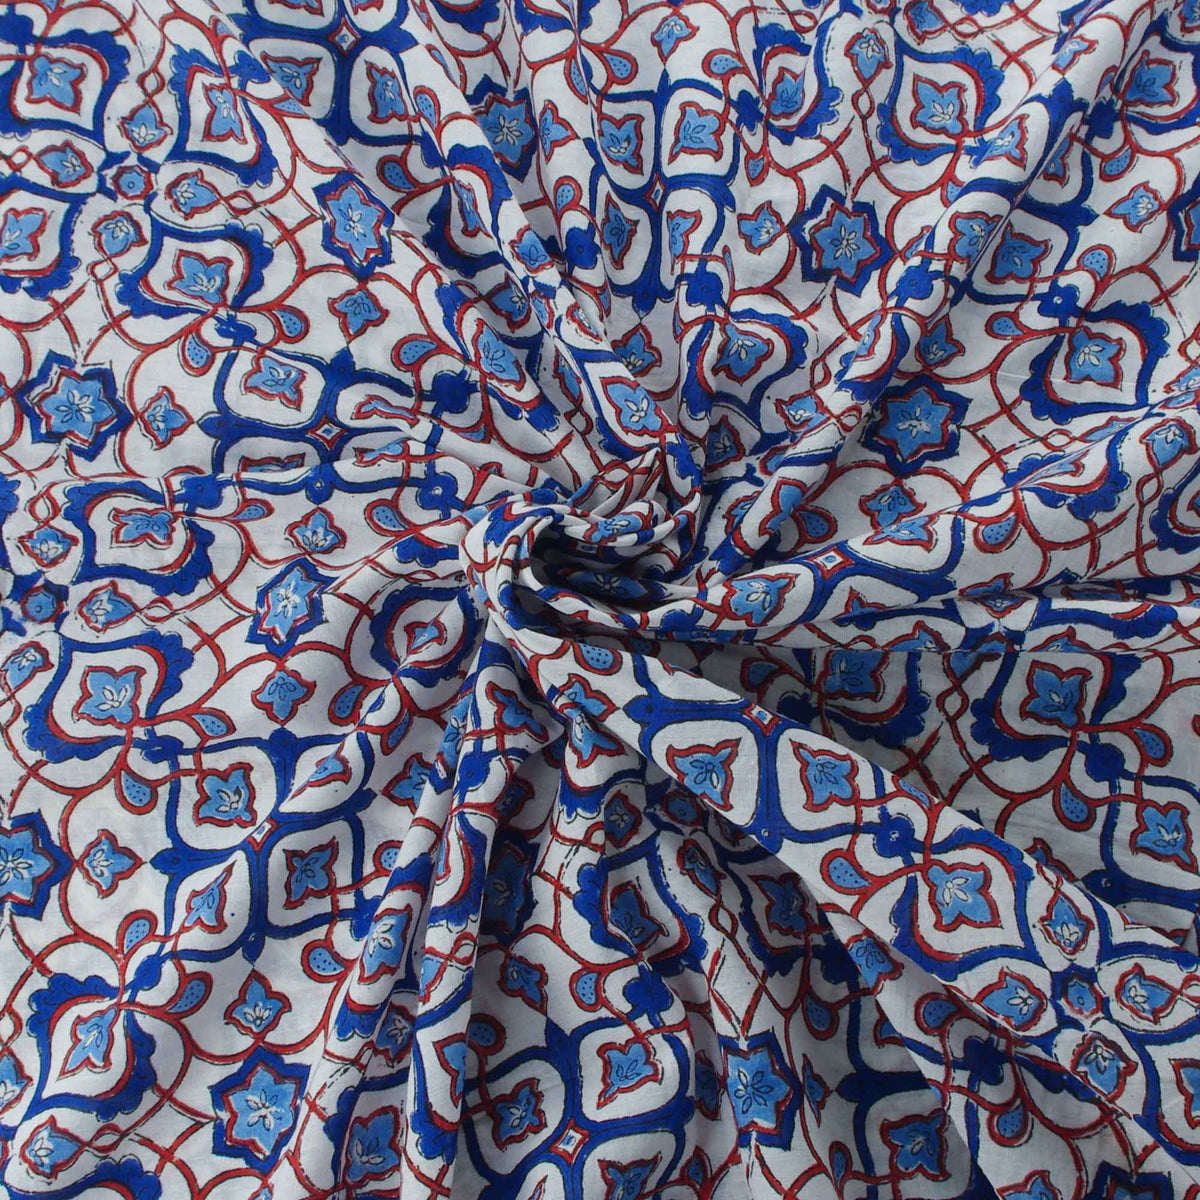 Indischer Handblock 100% Baumwolle Blau Grün Motiv Damen Kleid Stoff Design 109